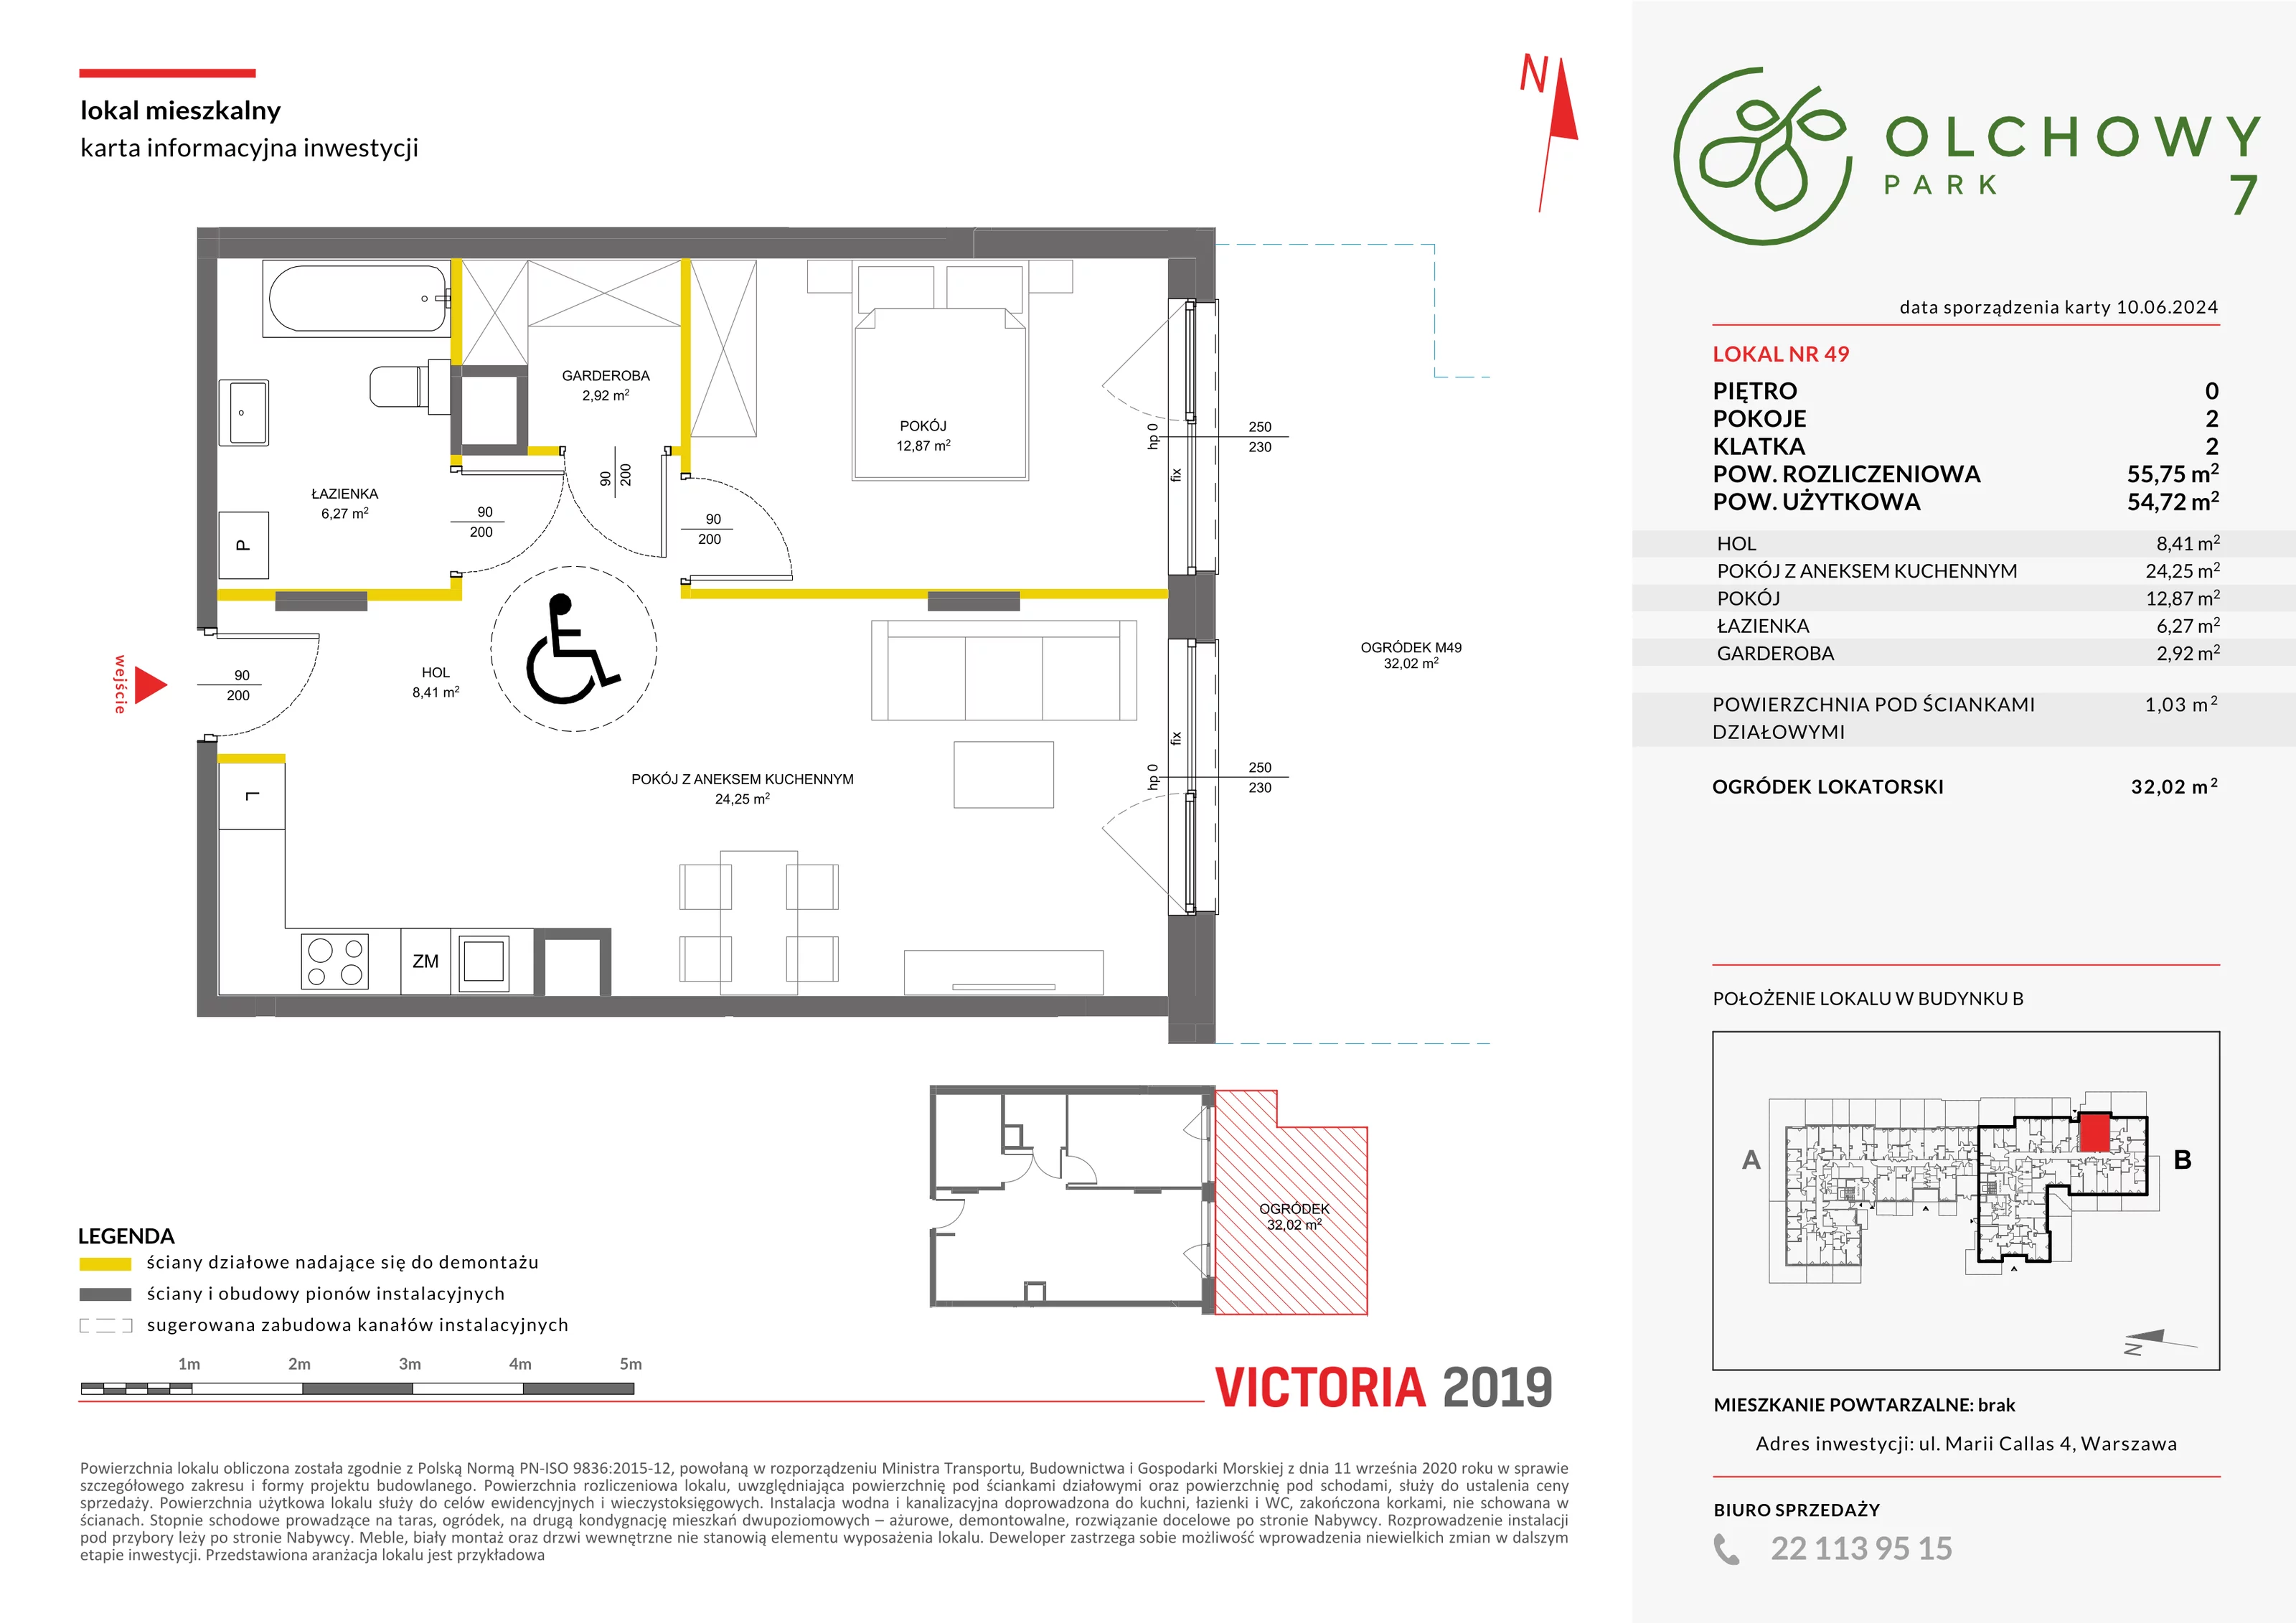 Mieszkanie 55,75 m², parter, oferta nr VII/49, Olchowy Park 7, Warszawa, Białołęka, Kobiałka, ul. Marii Callas 4A